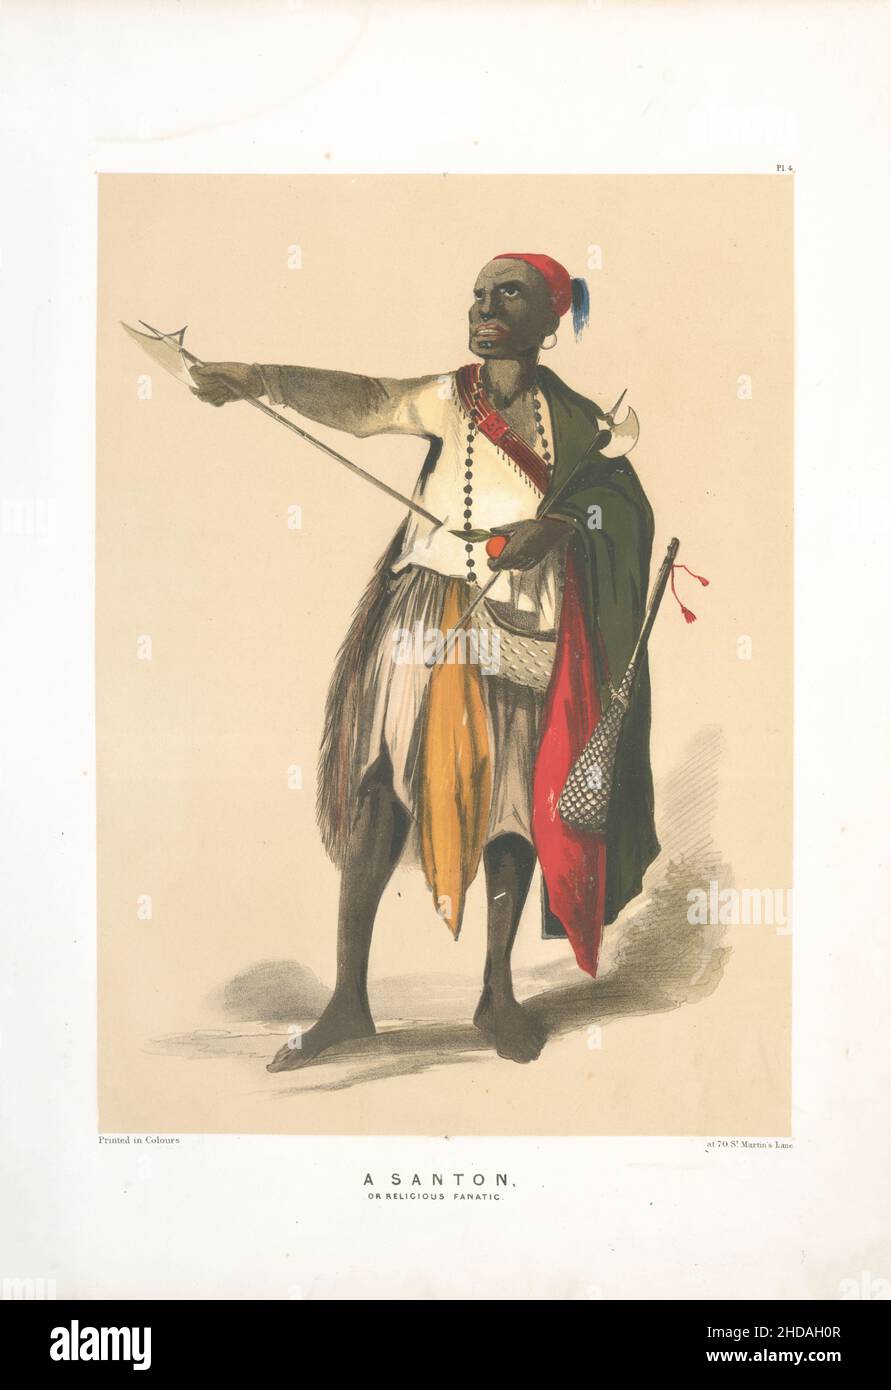 Litografia vintage a colori dell'Impero Ottomano: Un Santon o un fanatico religioso. 1854, di Forbes Mac Bean (artista) e Justin Sutcliffe (litografo) Foto Stock